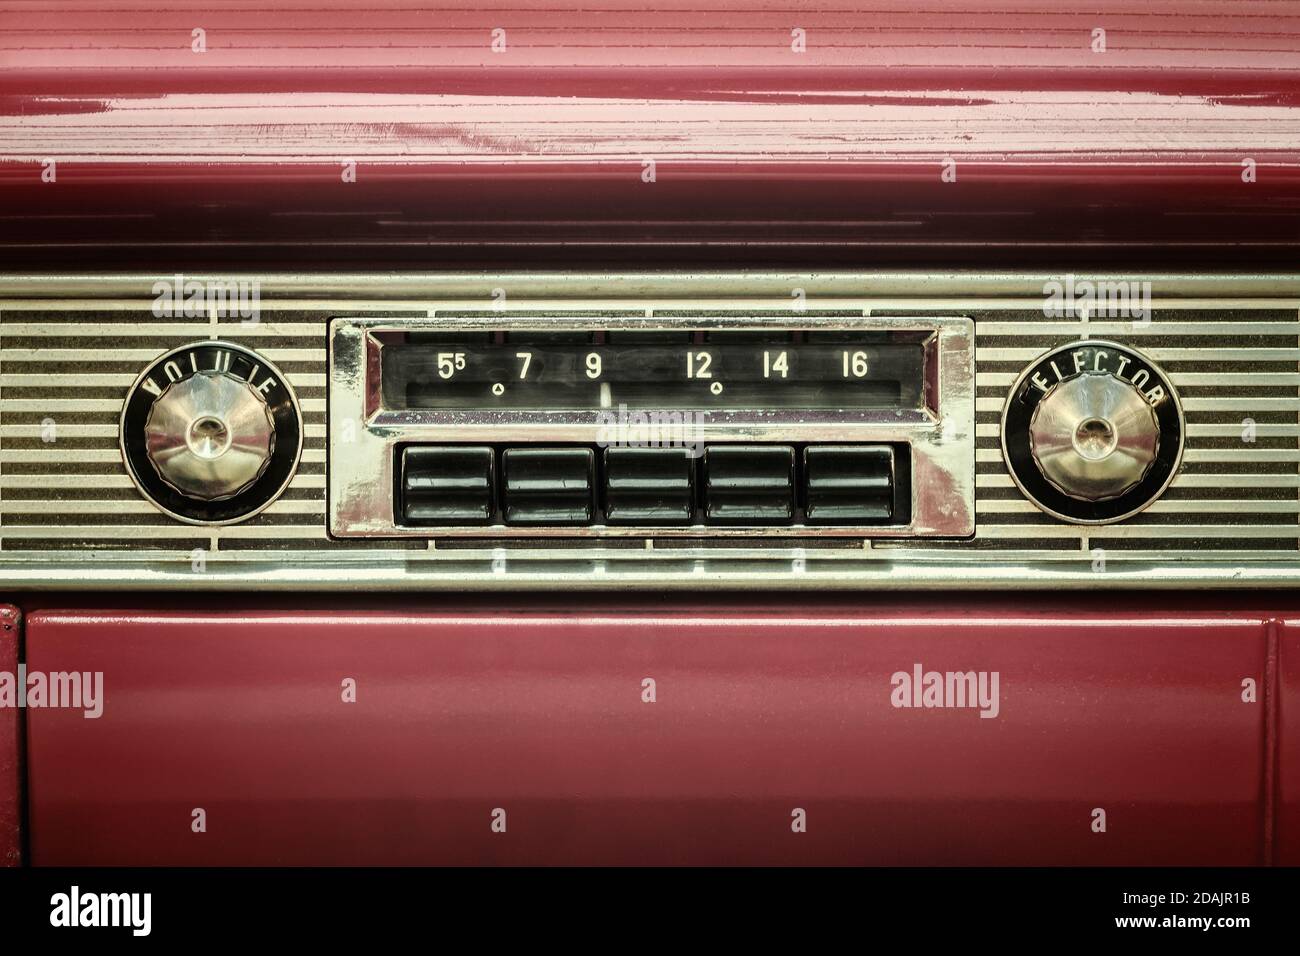 ten vintage car radio